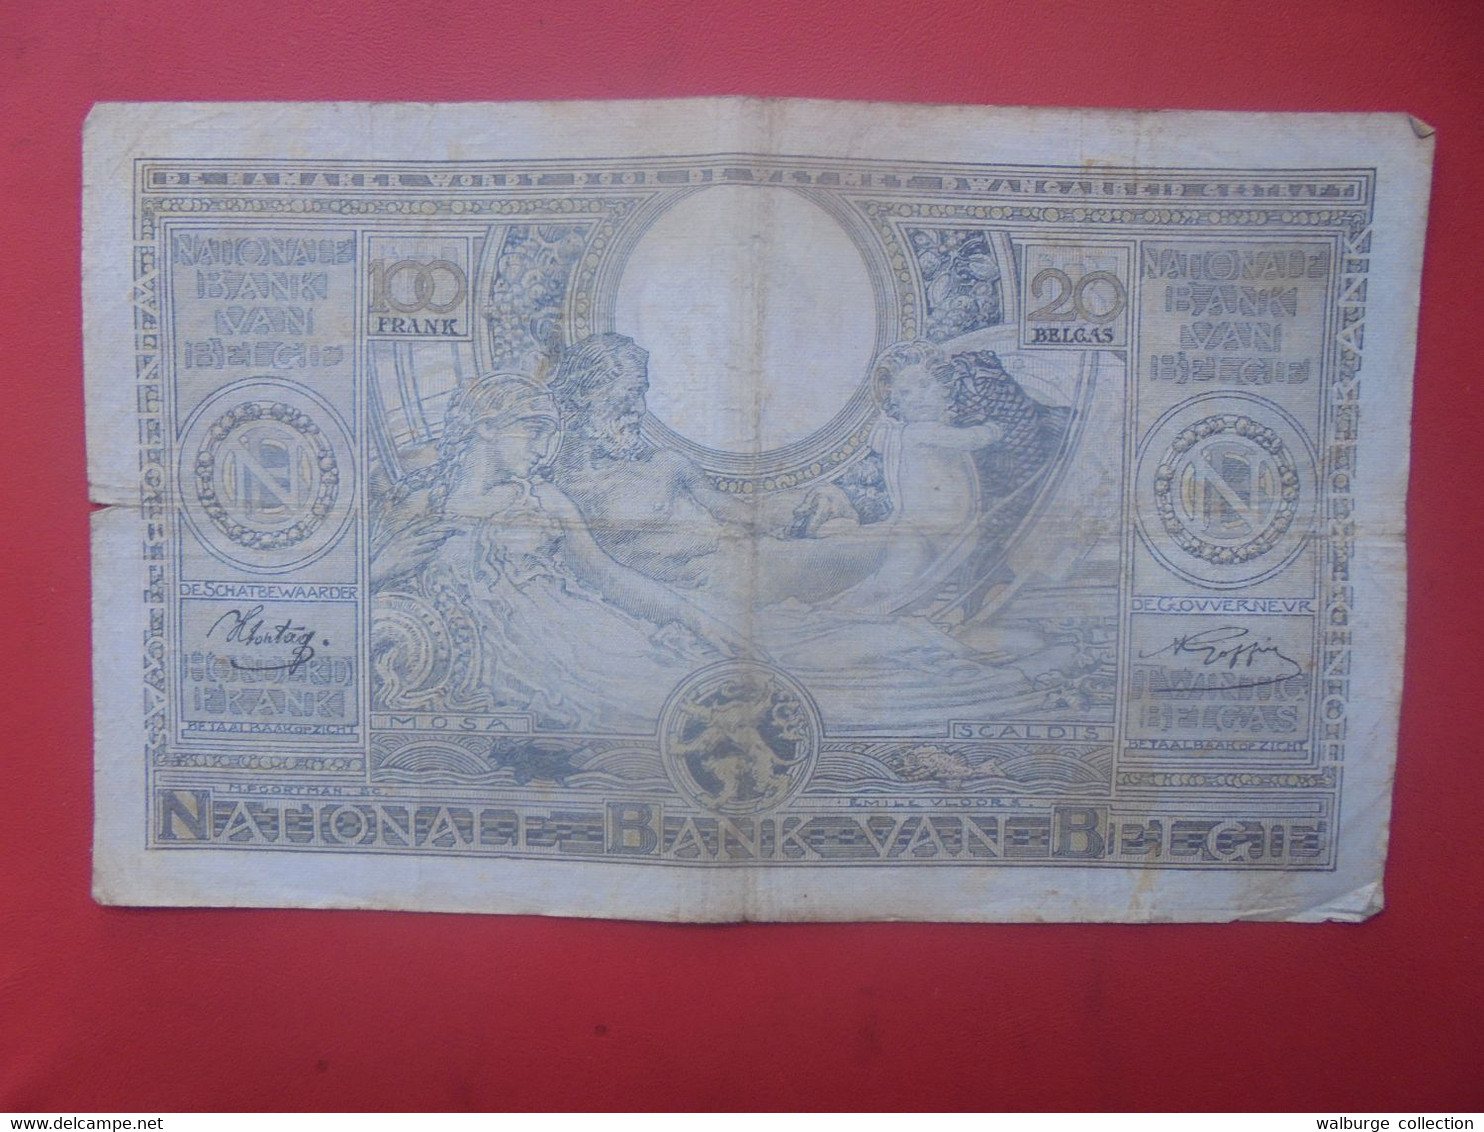 BELGIQUE 100 FRANCS 31-7-41 Circuler (B.18) - 100 Francs & 100 Francs-20 Belgas